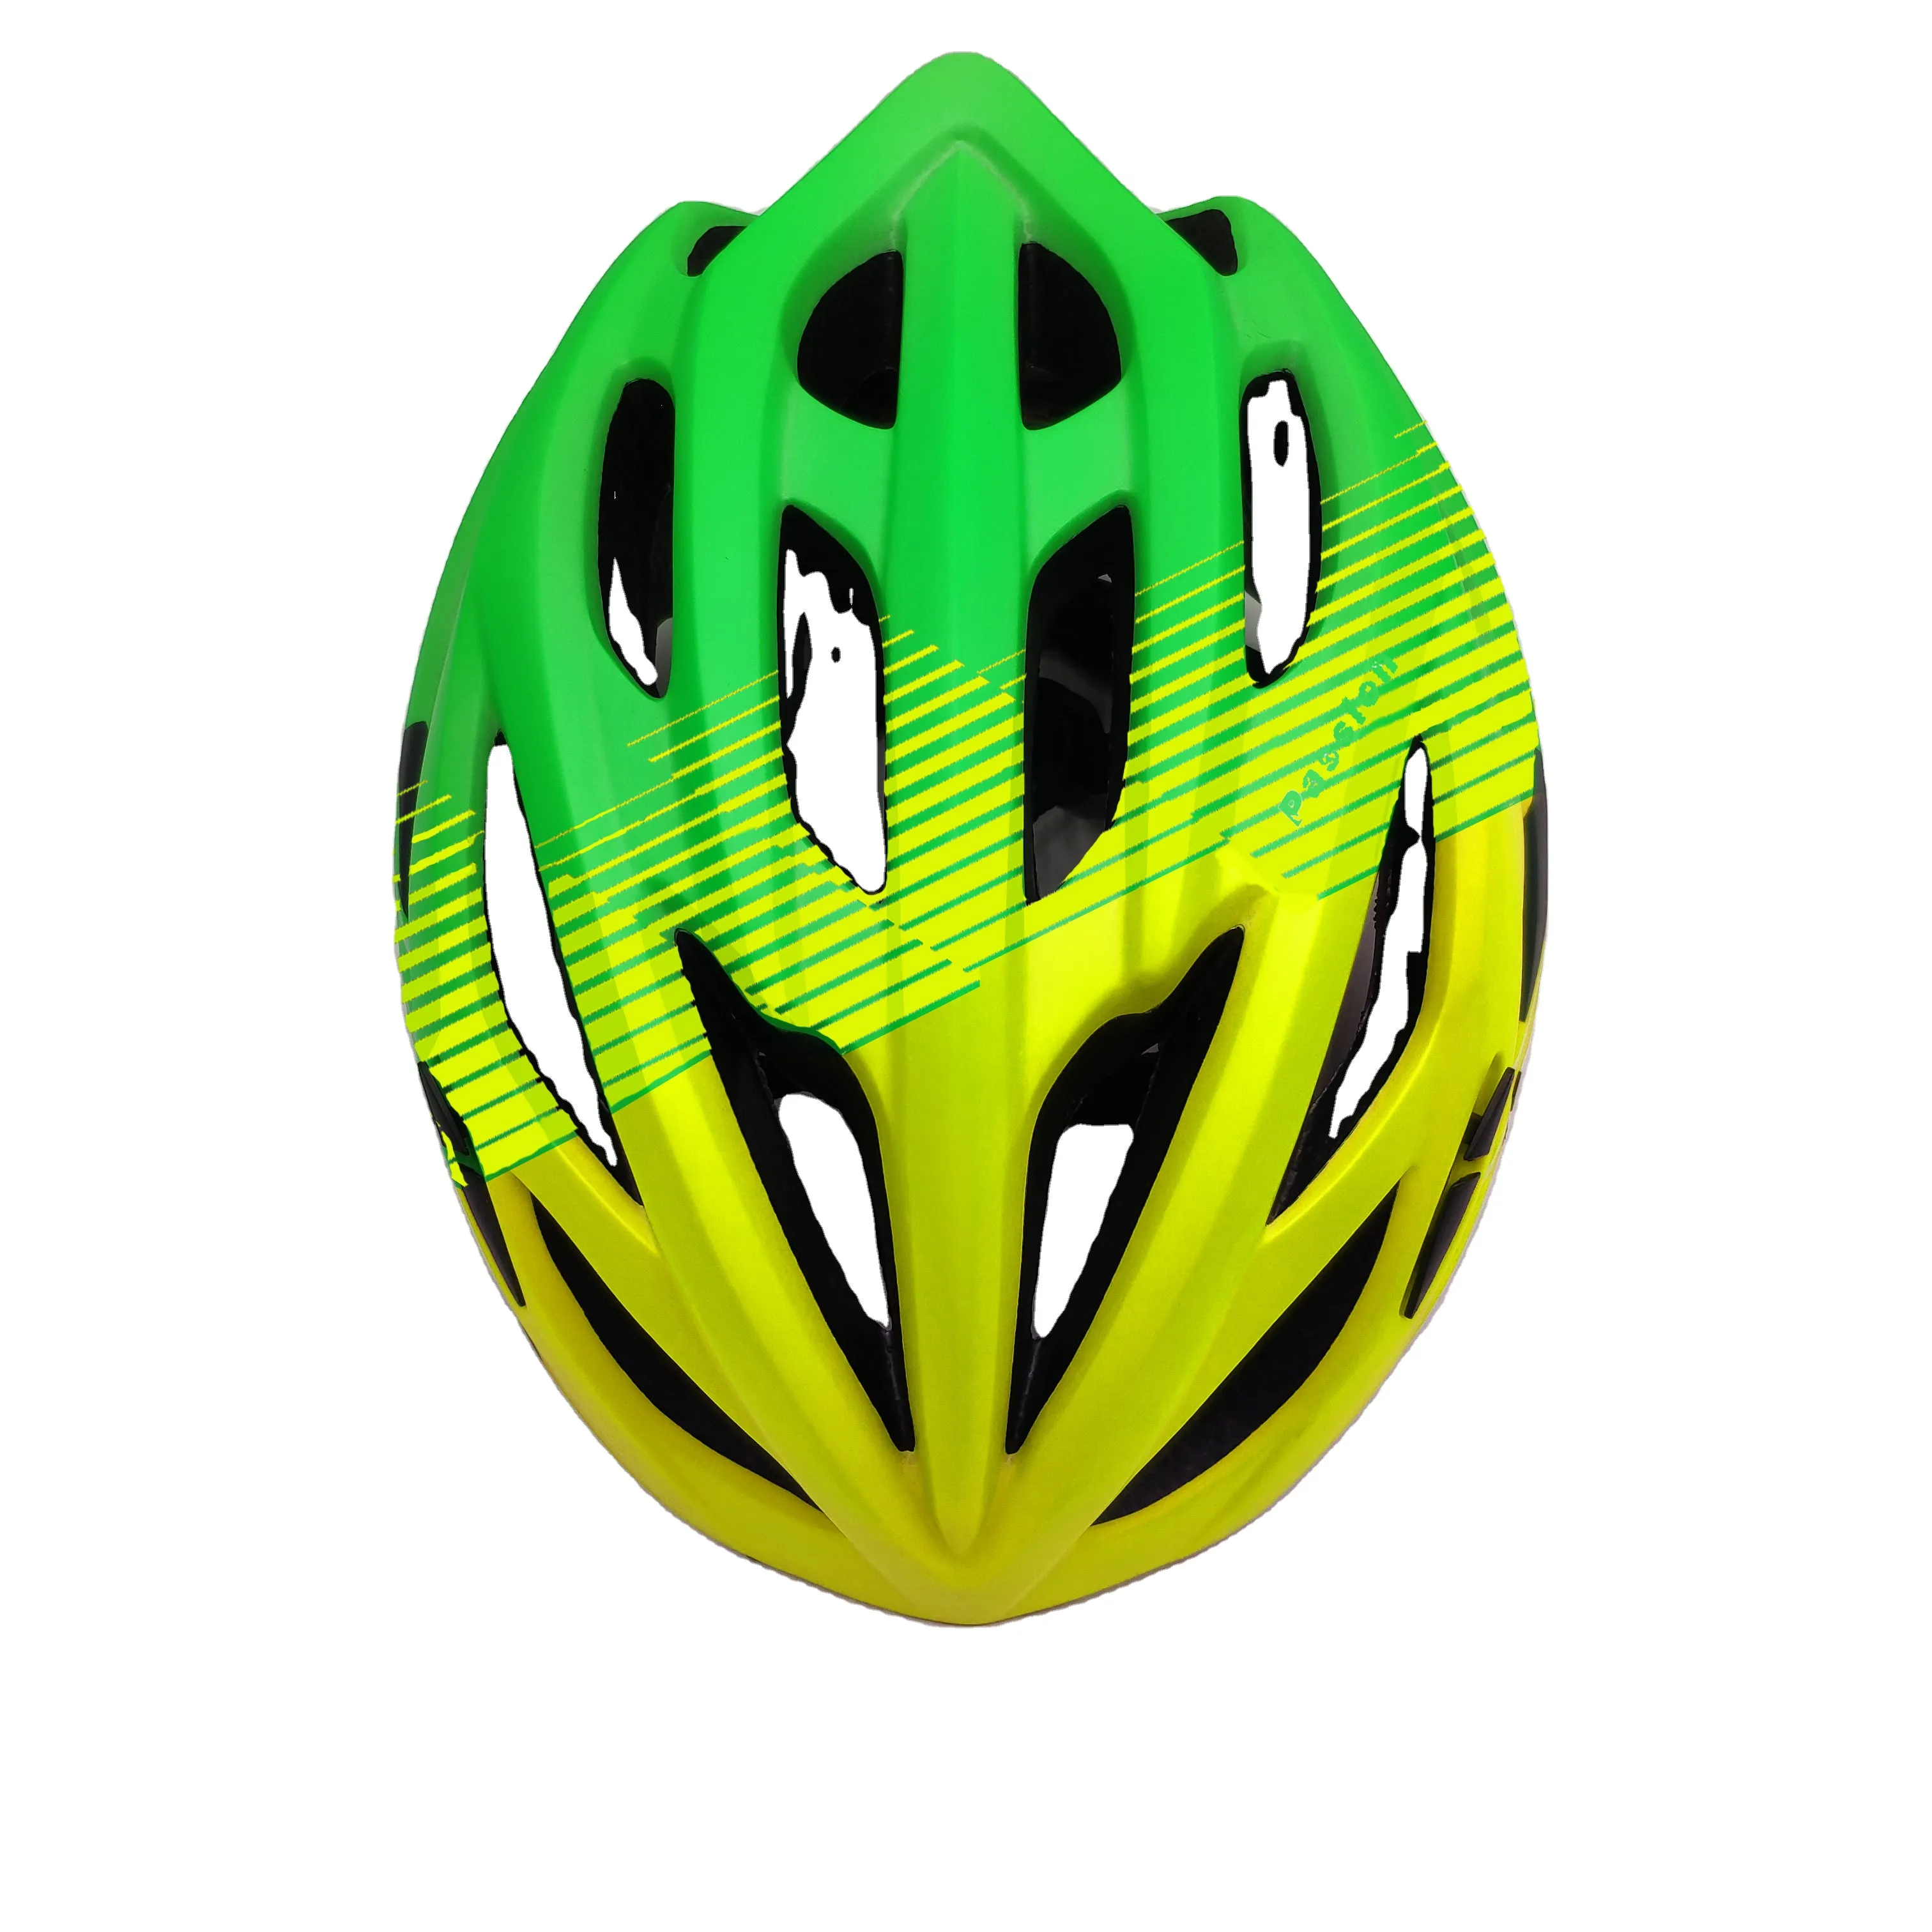 Casco de bicicleta para niños y adultos, accesorios de bicicleta multicolor, verde/negro/rojo, envío rápido